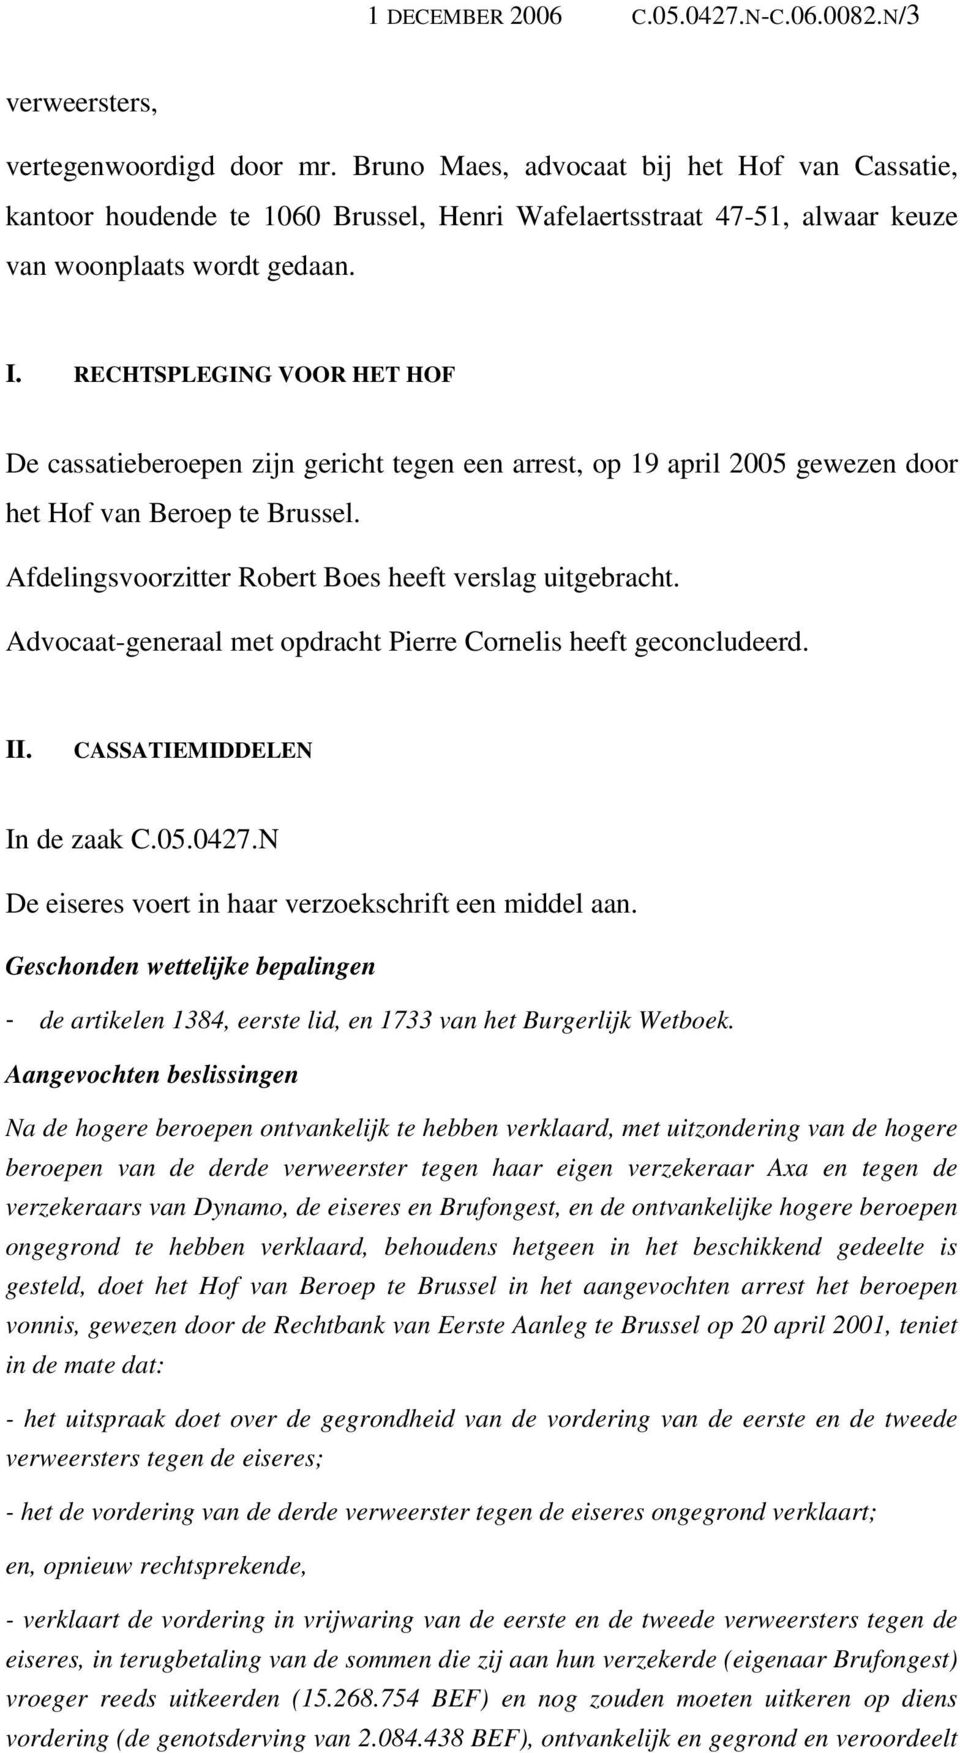 RECHTSPLEGING VOOR HET HOF De cassatieberoepen zijn gericht tegen een arrest, op 19 april 2005 gewezen door het Hof van Beroep te Brussel. Afdelingsvoorzitter Robert Boes heeft verslag uitgebracht.